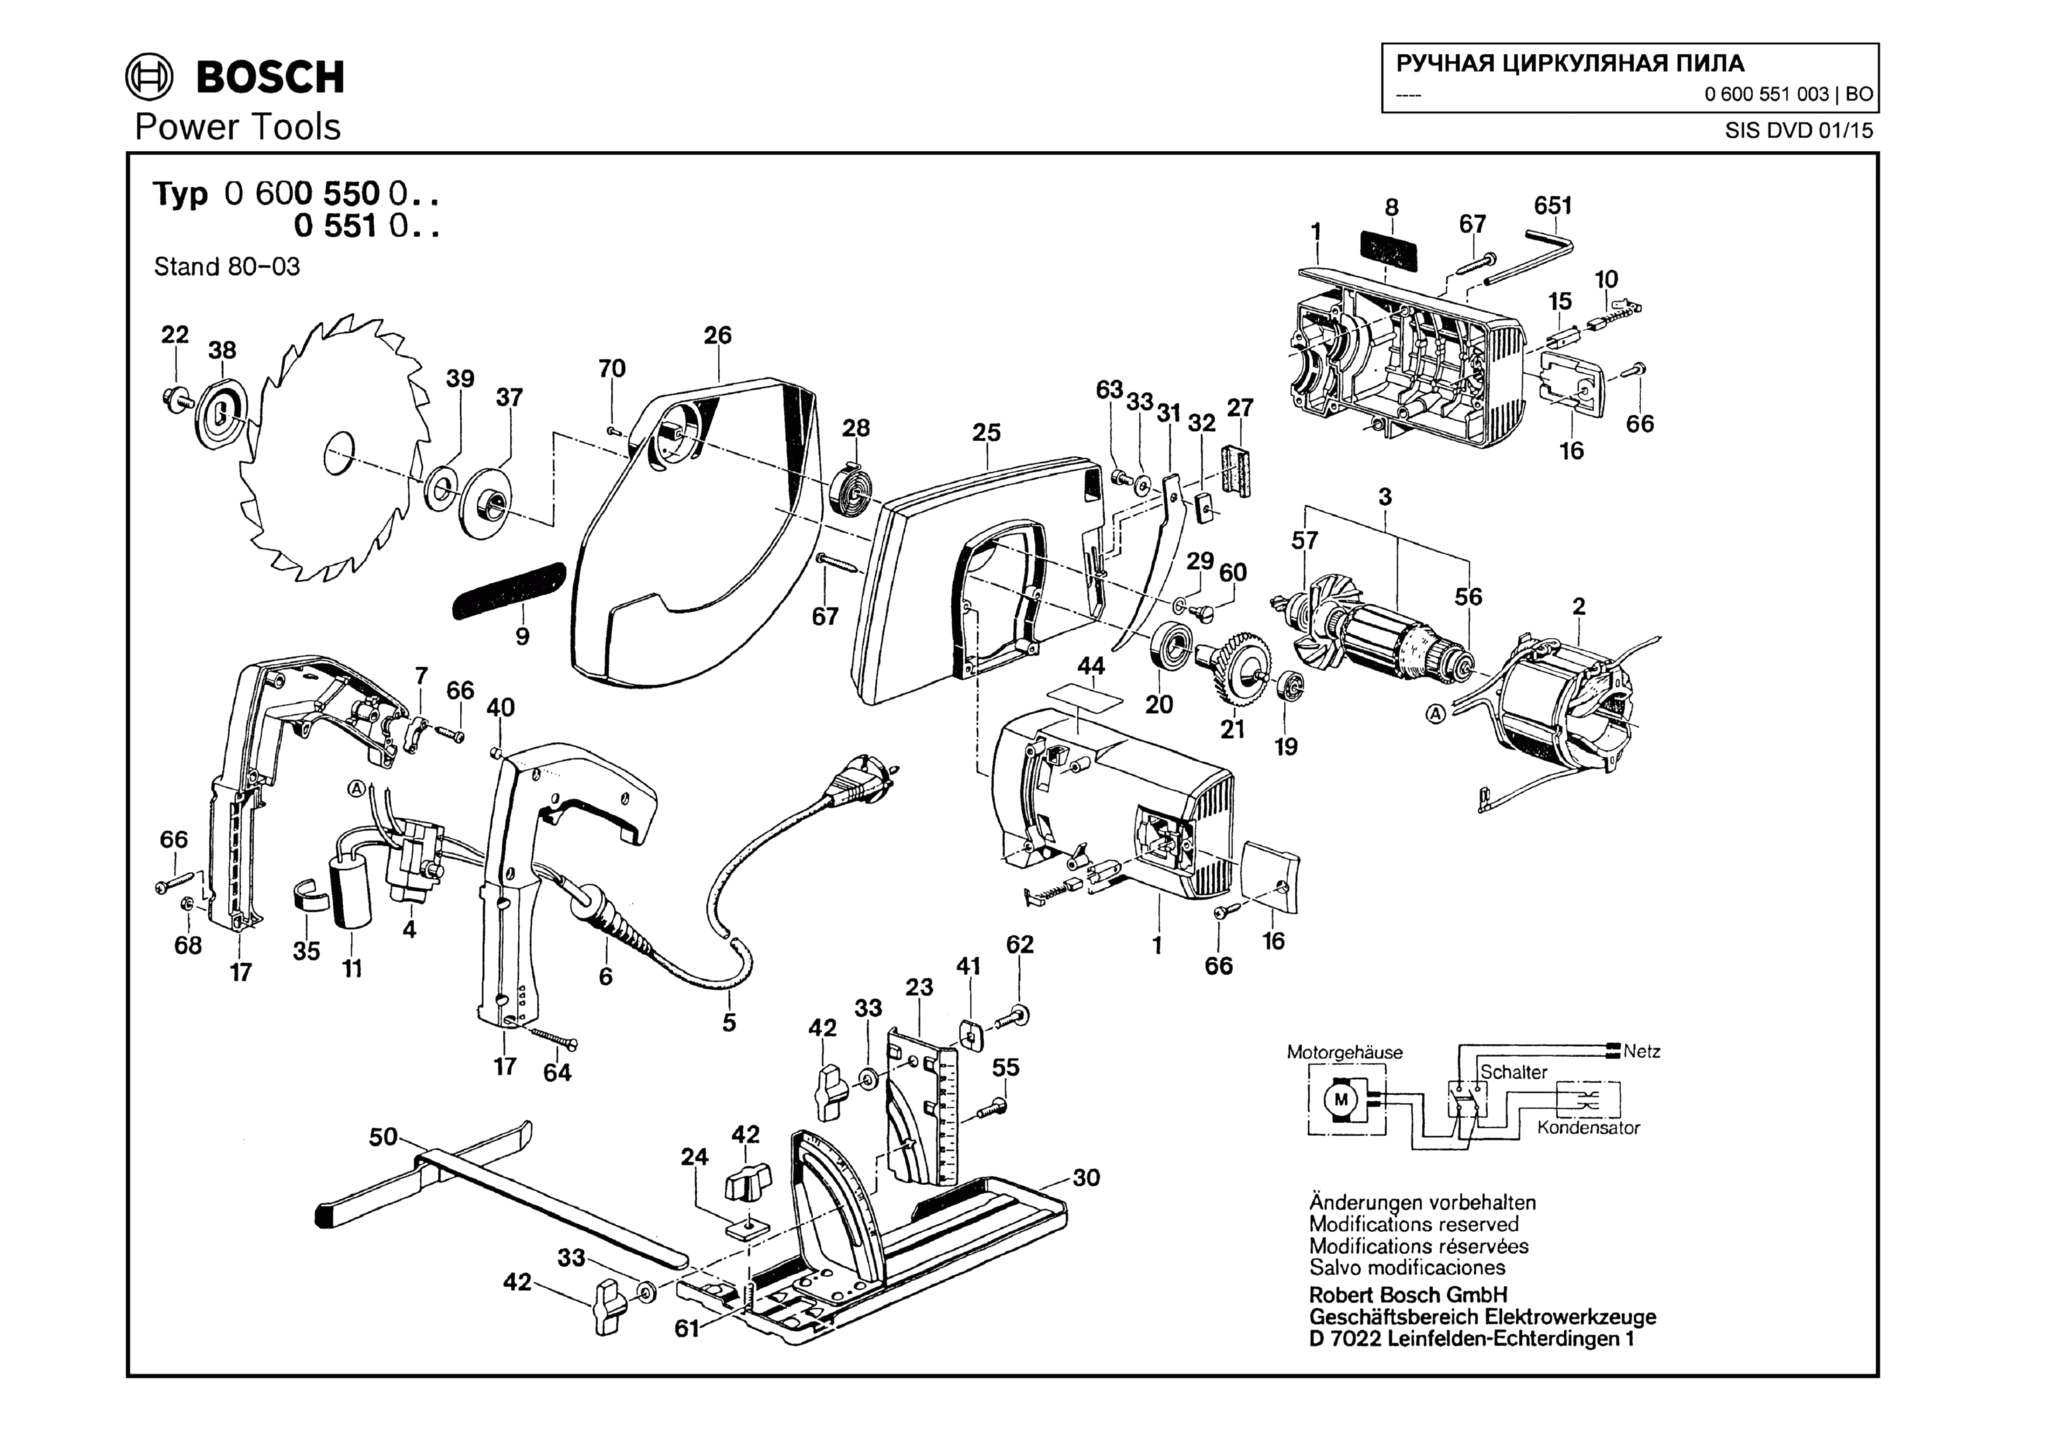 Запчасти, схема и деталировка Bosch (ТИП 0600551003)